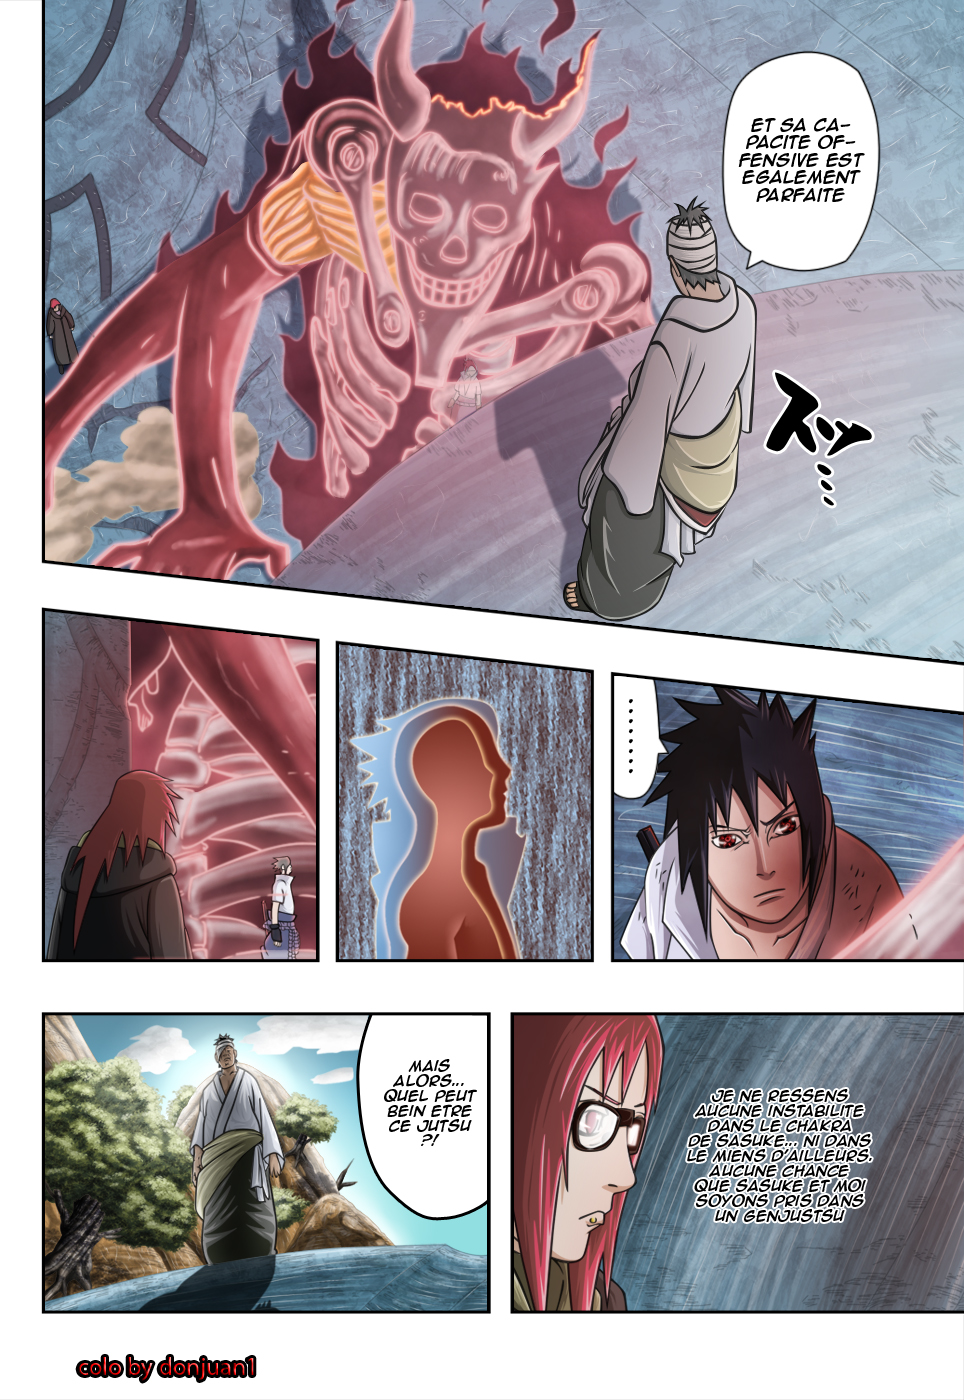 Naruto chapitre 477 colorisé - Page 4